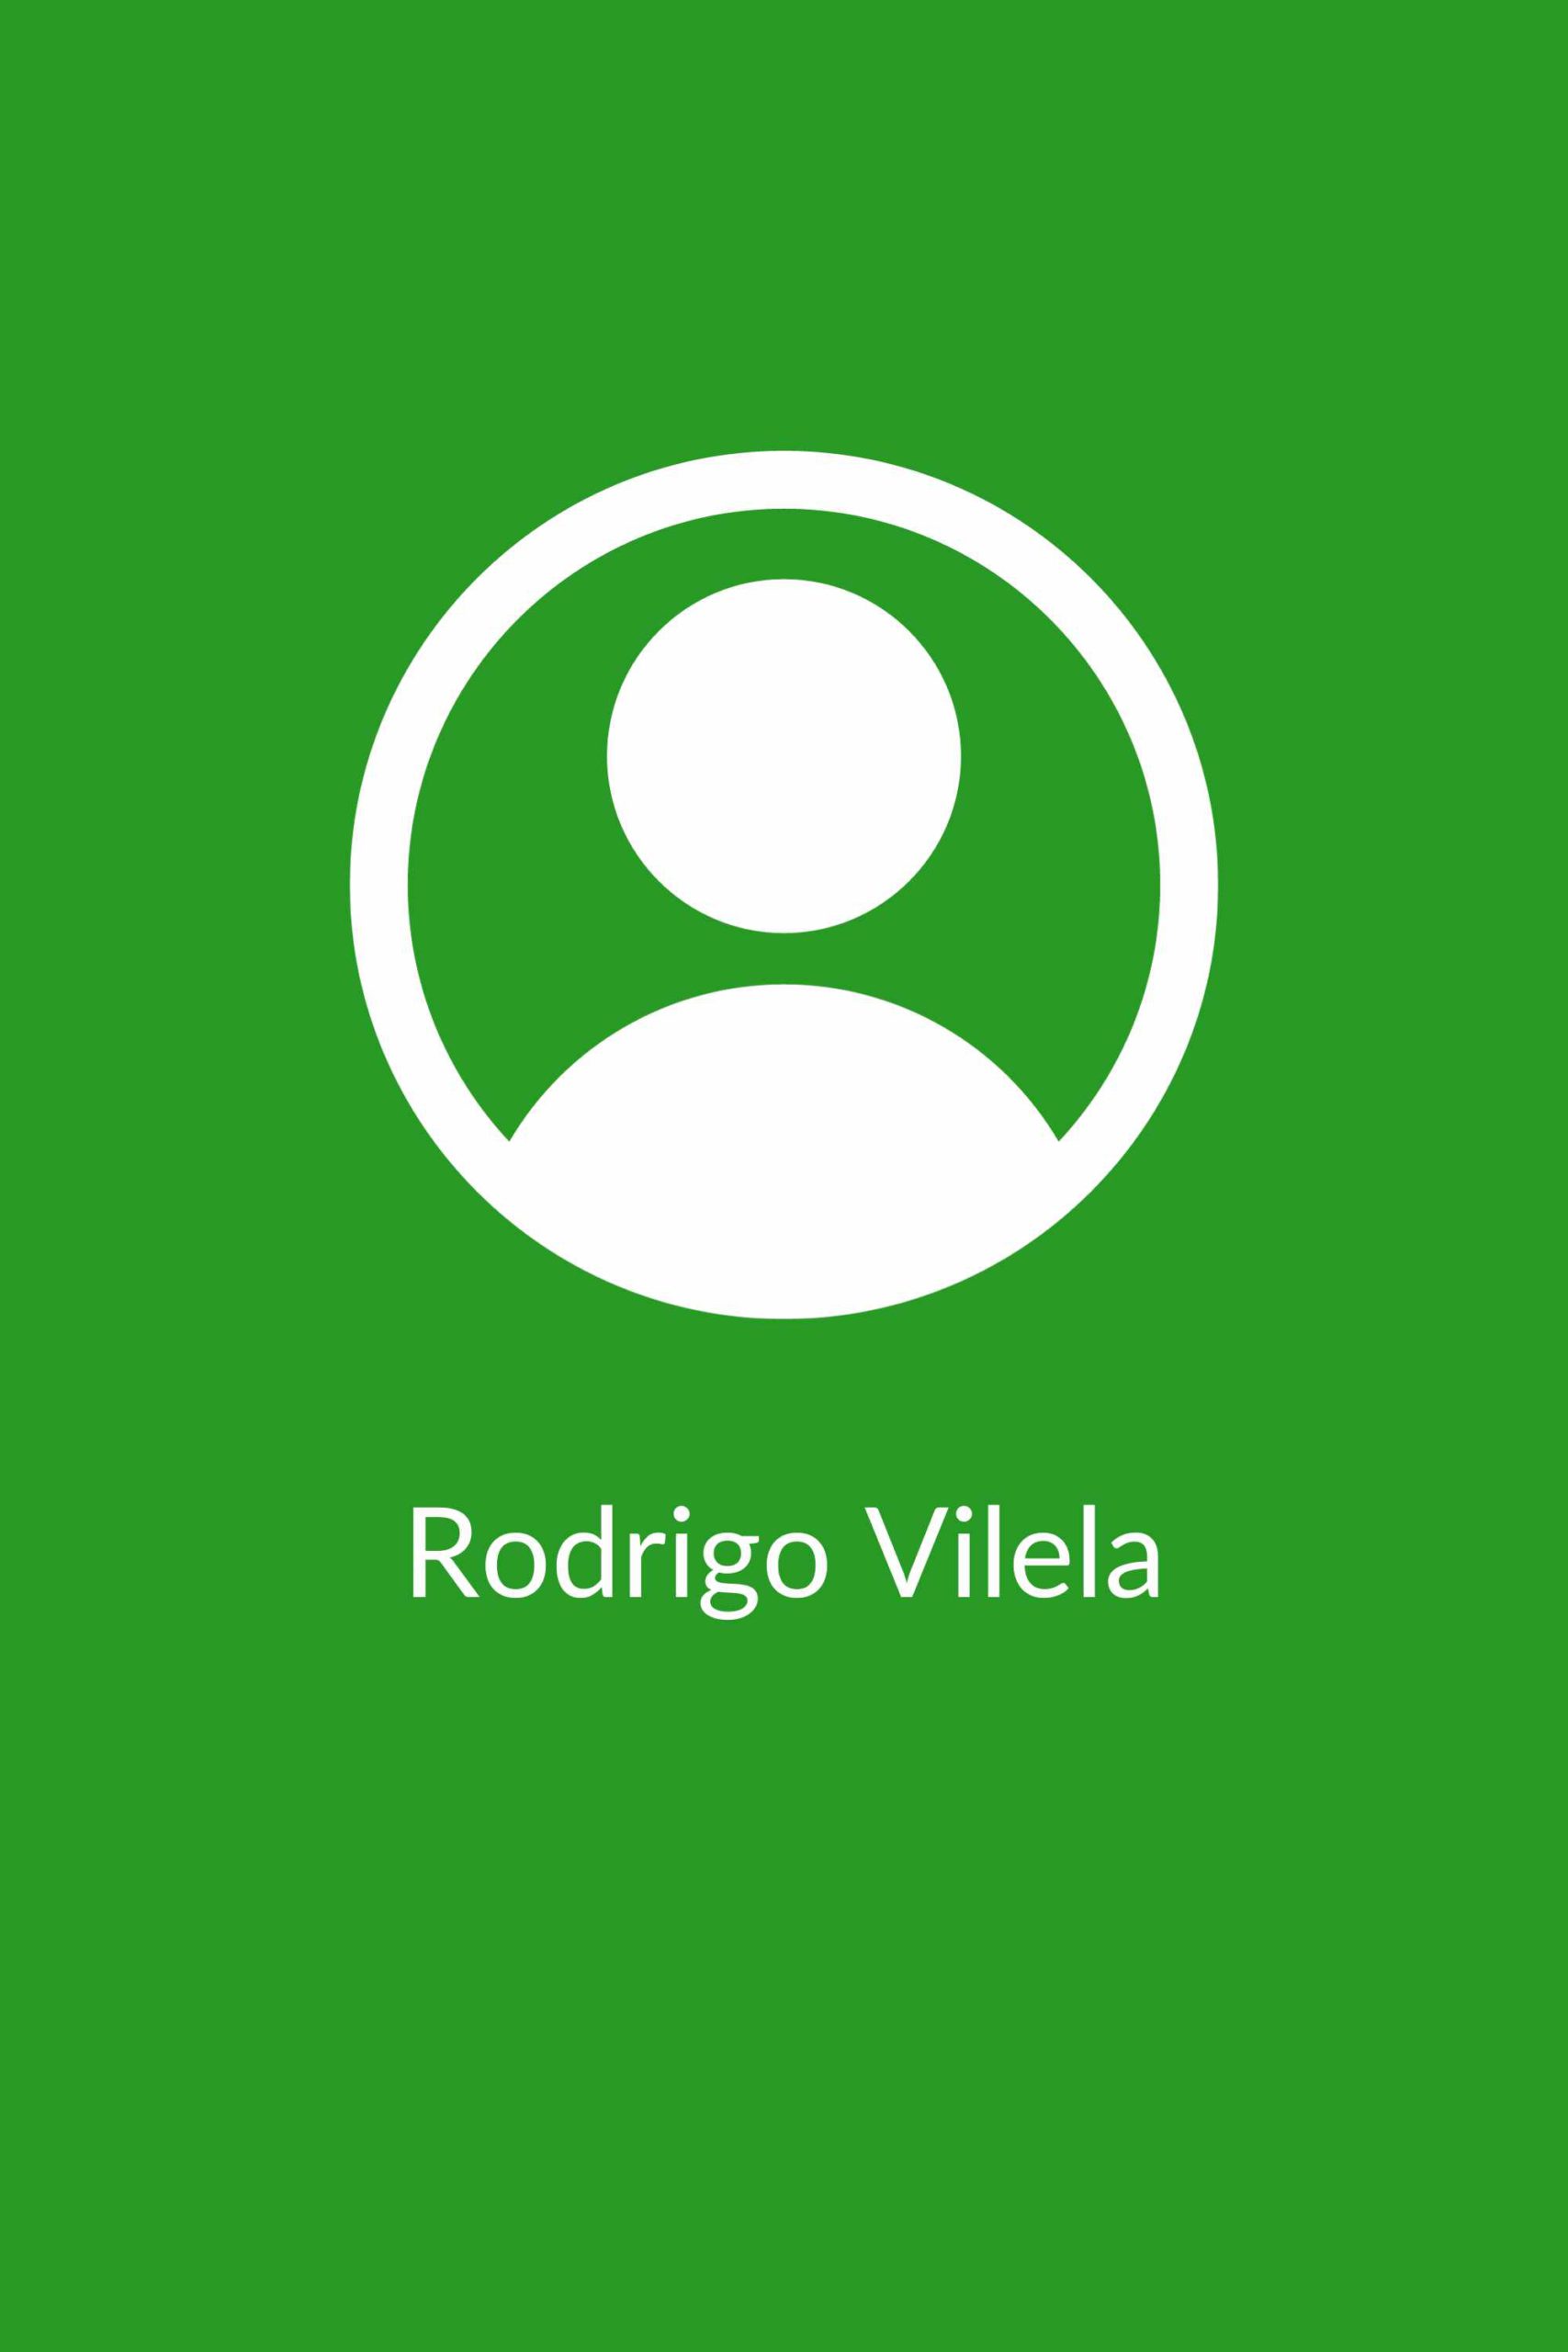 Rodrigo Vilela - Hospital Veterinário de Aveiro